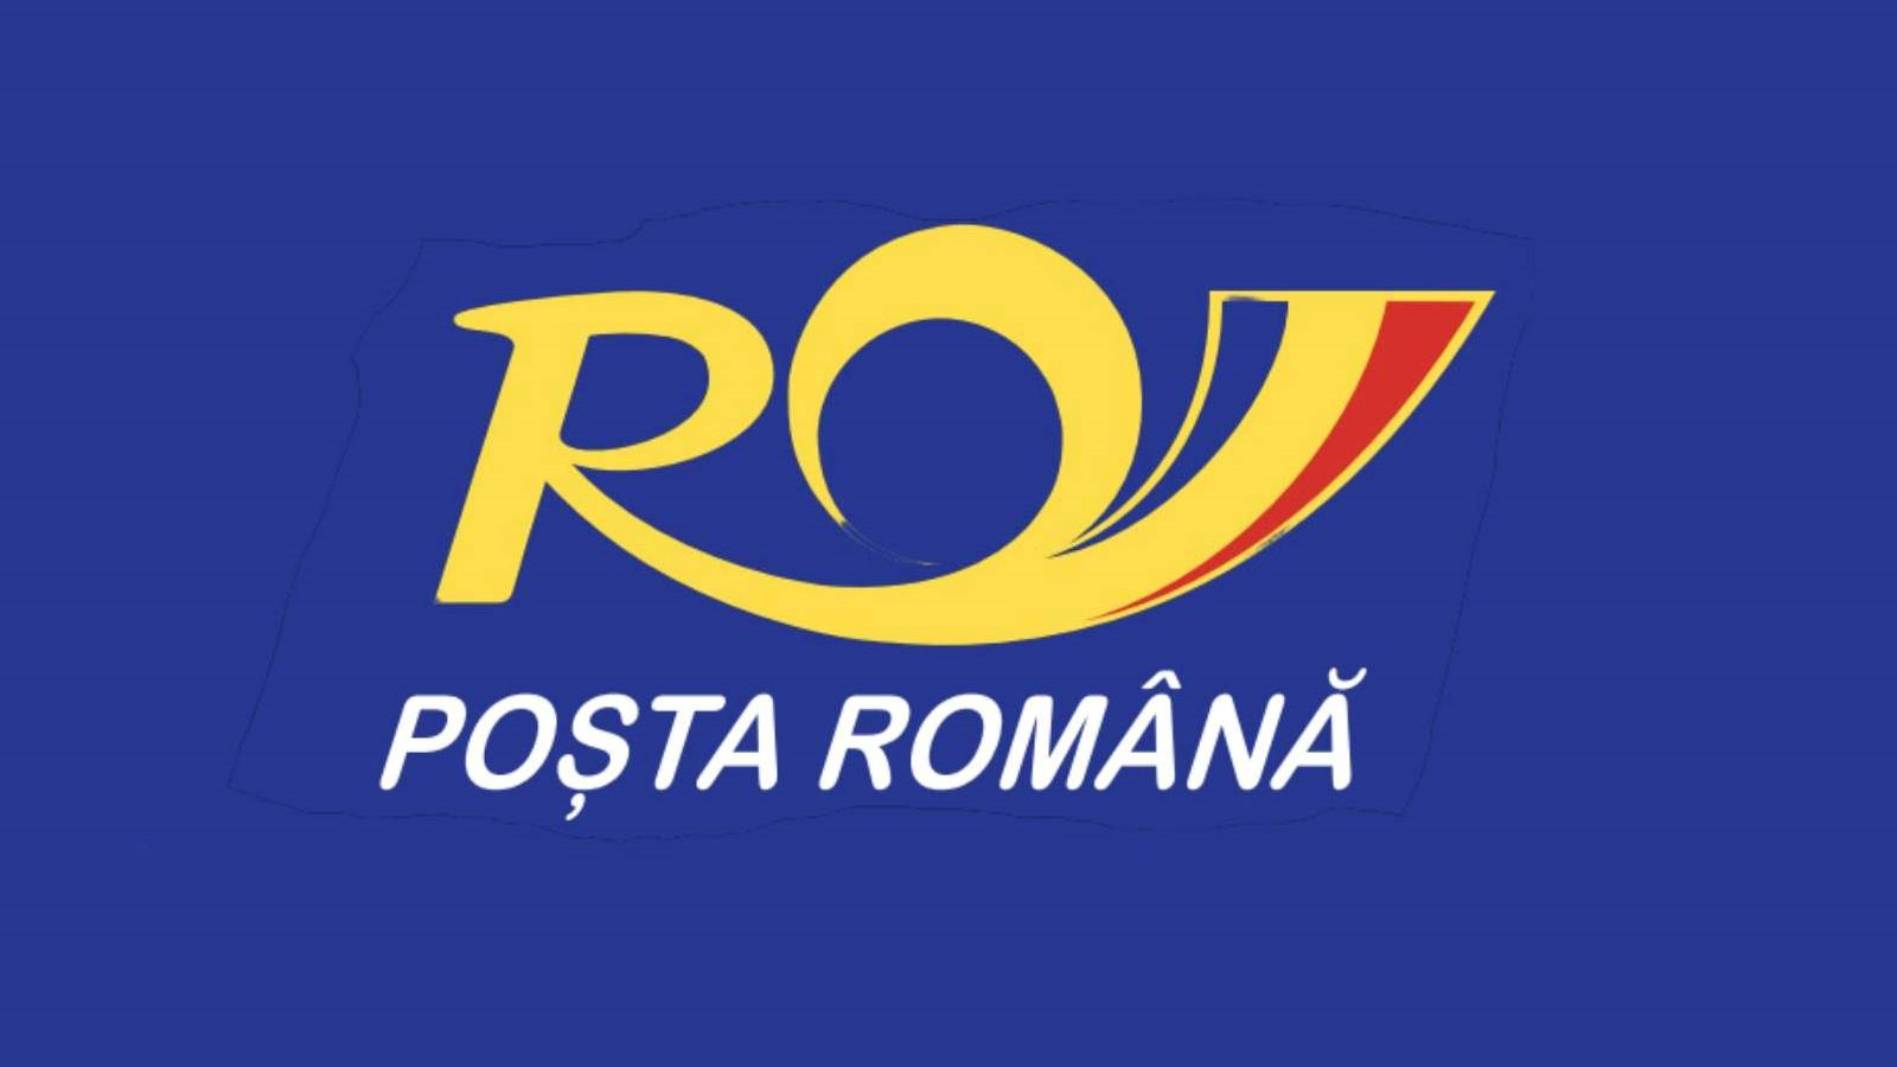 Segnale d'ALLARME lanciato dalle Poste Rumene che porta all'attenzione di tutti i romeni